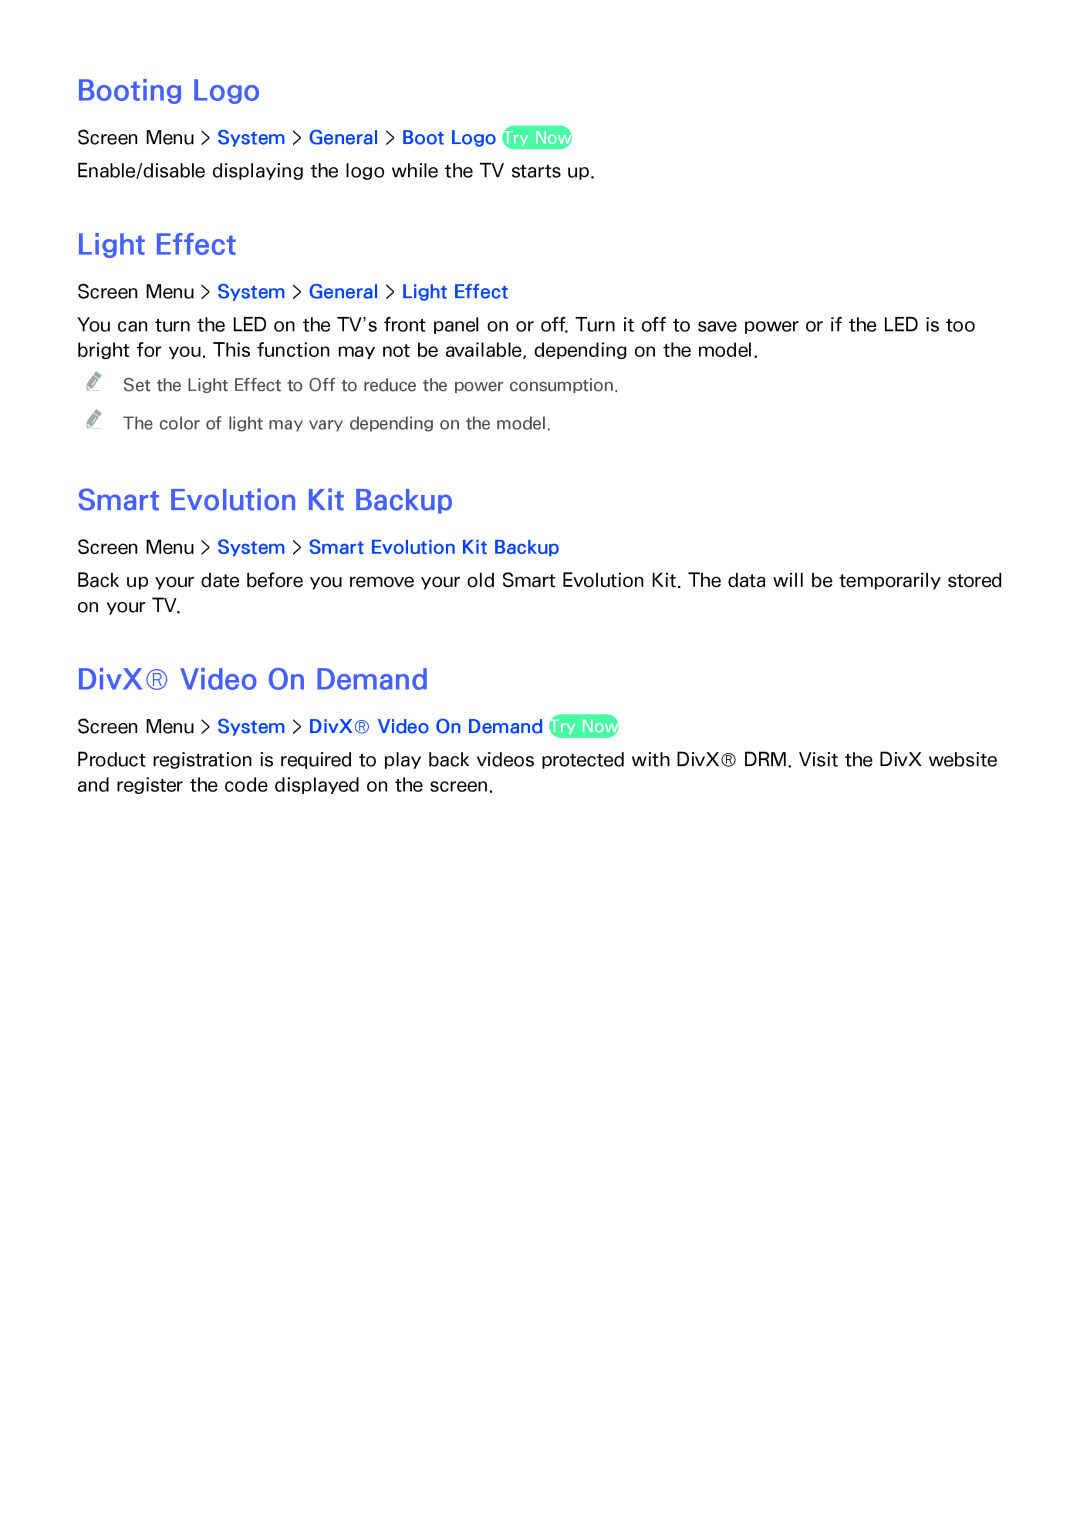 Samsung SEK-1000 manual Booting Logo, Light Effect, Smart Evolution Kit Backup, DivX Video On Demand 